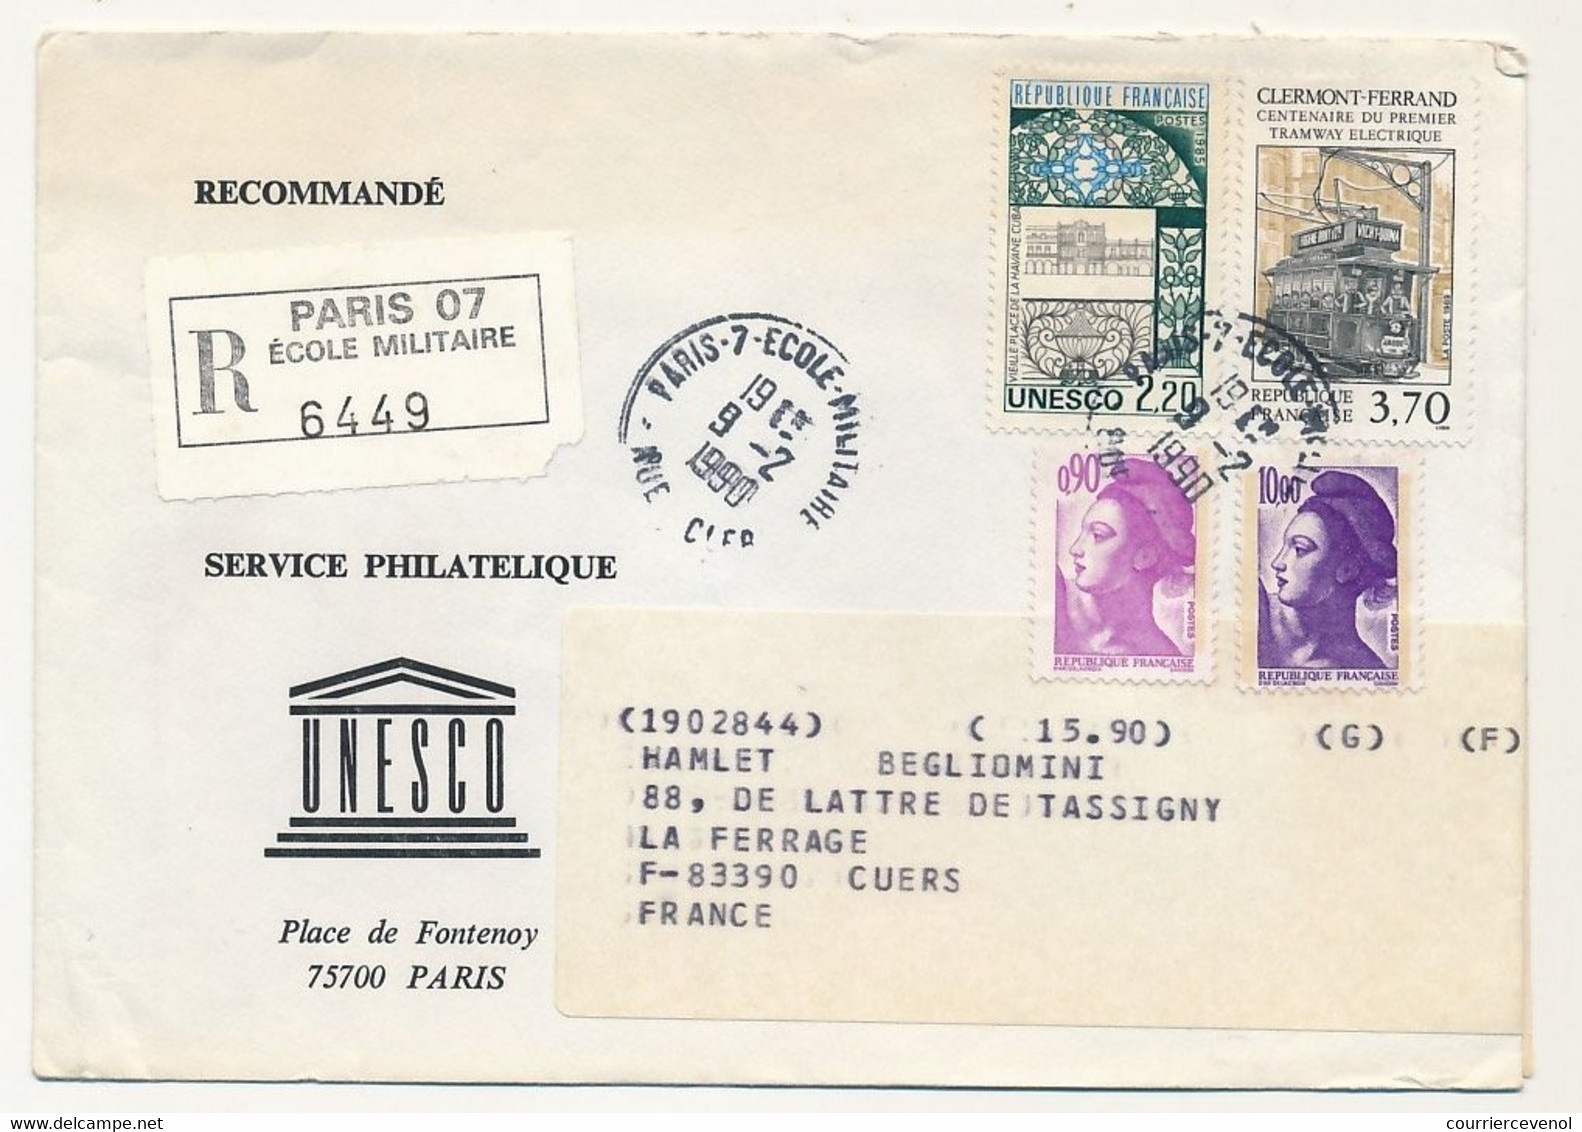 FRANCE - UNESCO - 8 Enveloppes Service Philatélique Unesco Avec Timbres De Service - Obl Paris 7 Rue Clerc - 1989/90 - Briefe U. Dokumente